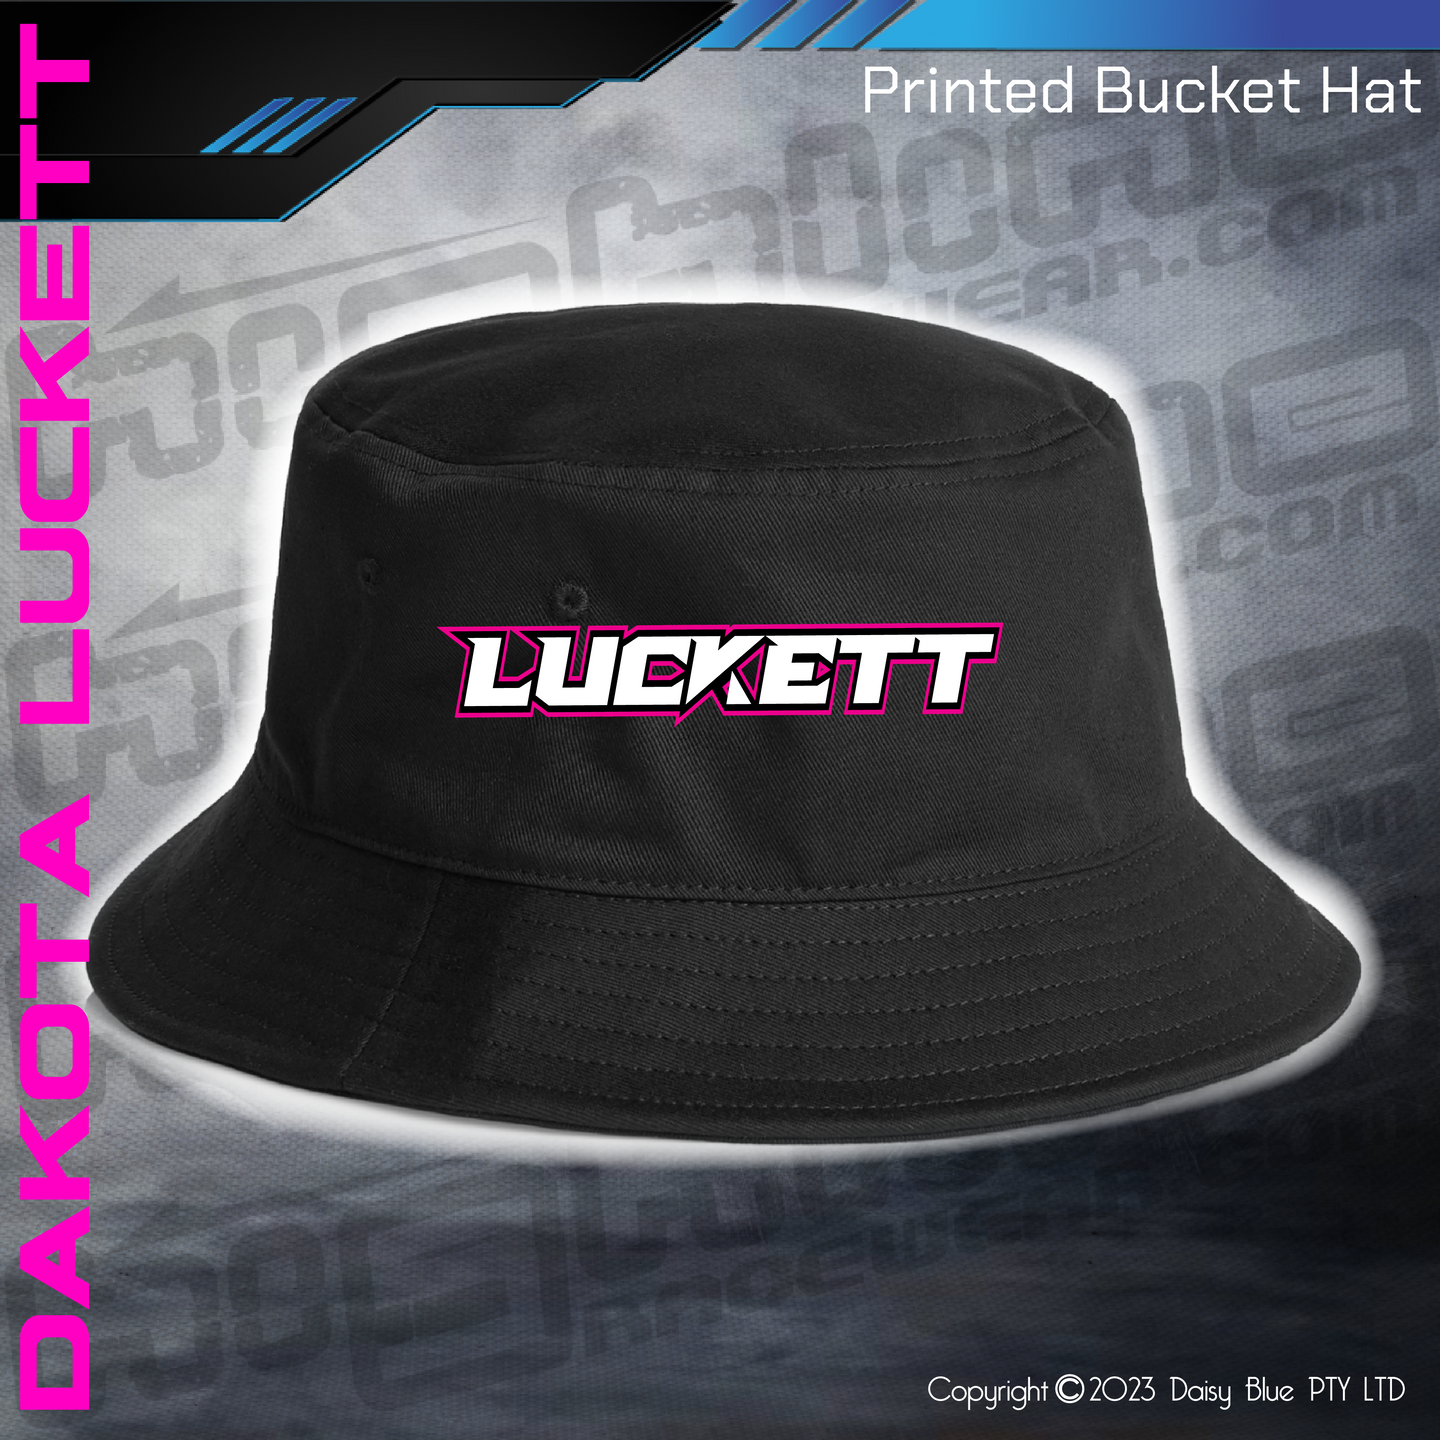 Printed Bucket Hat - Dakota Luckett